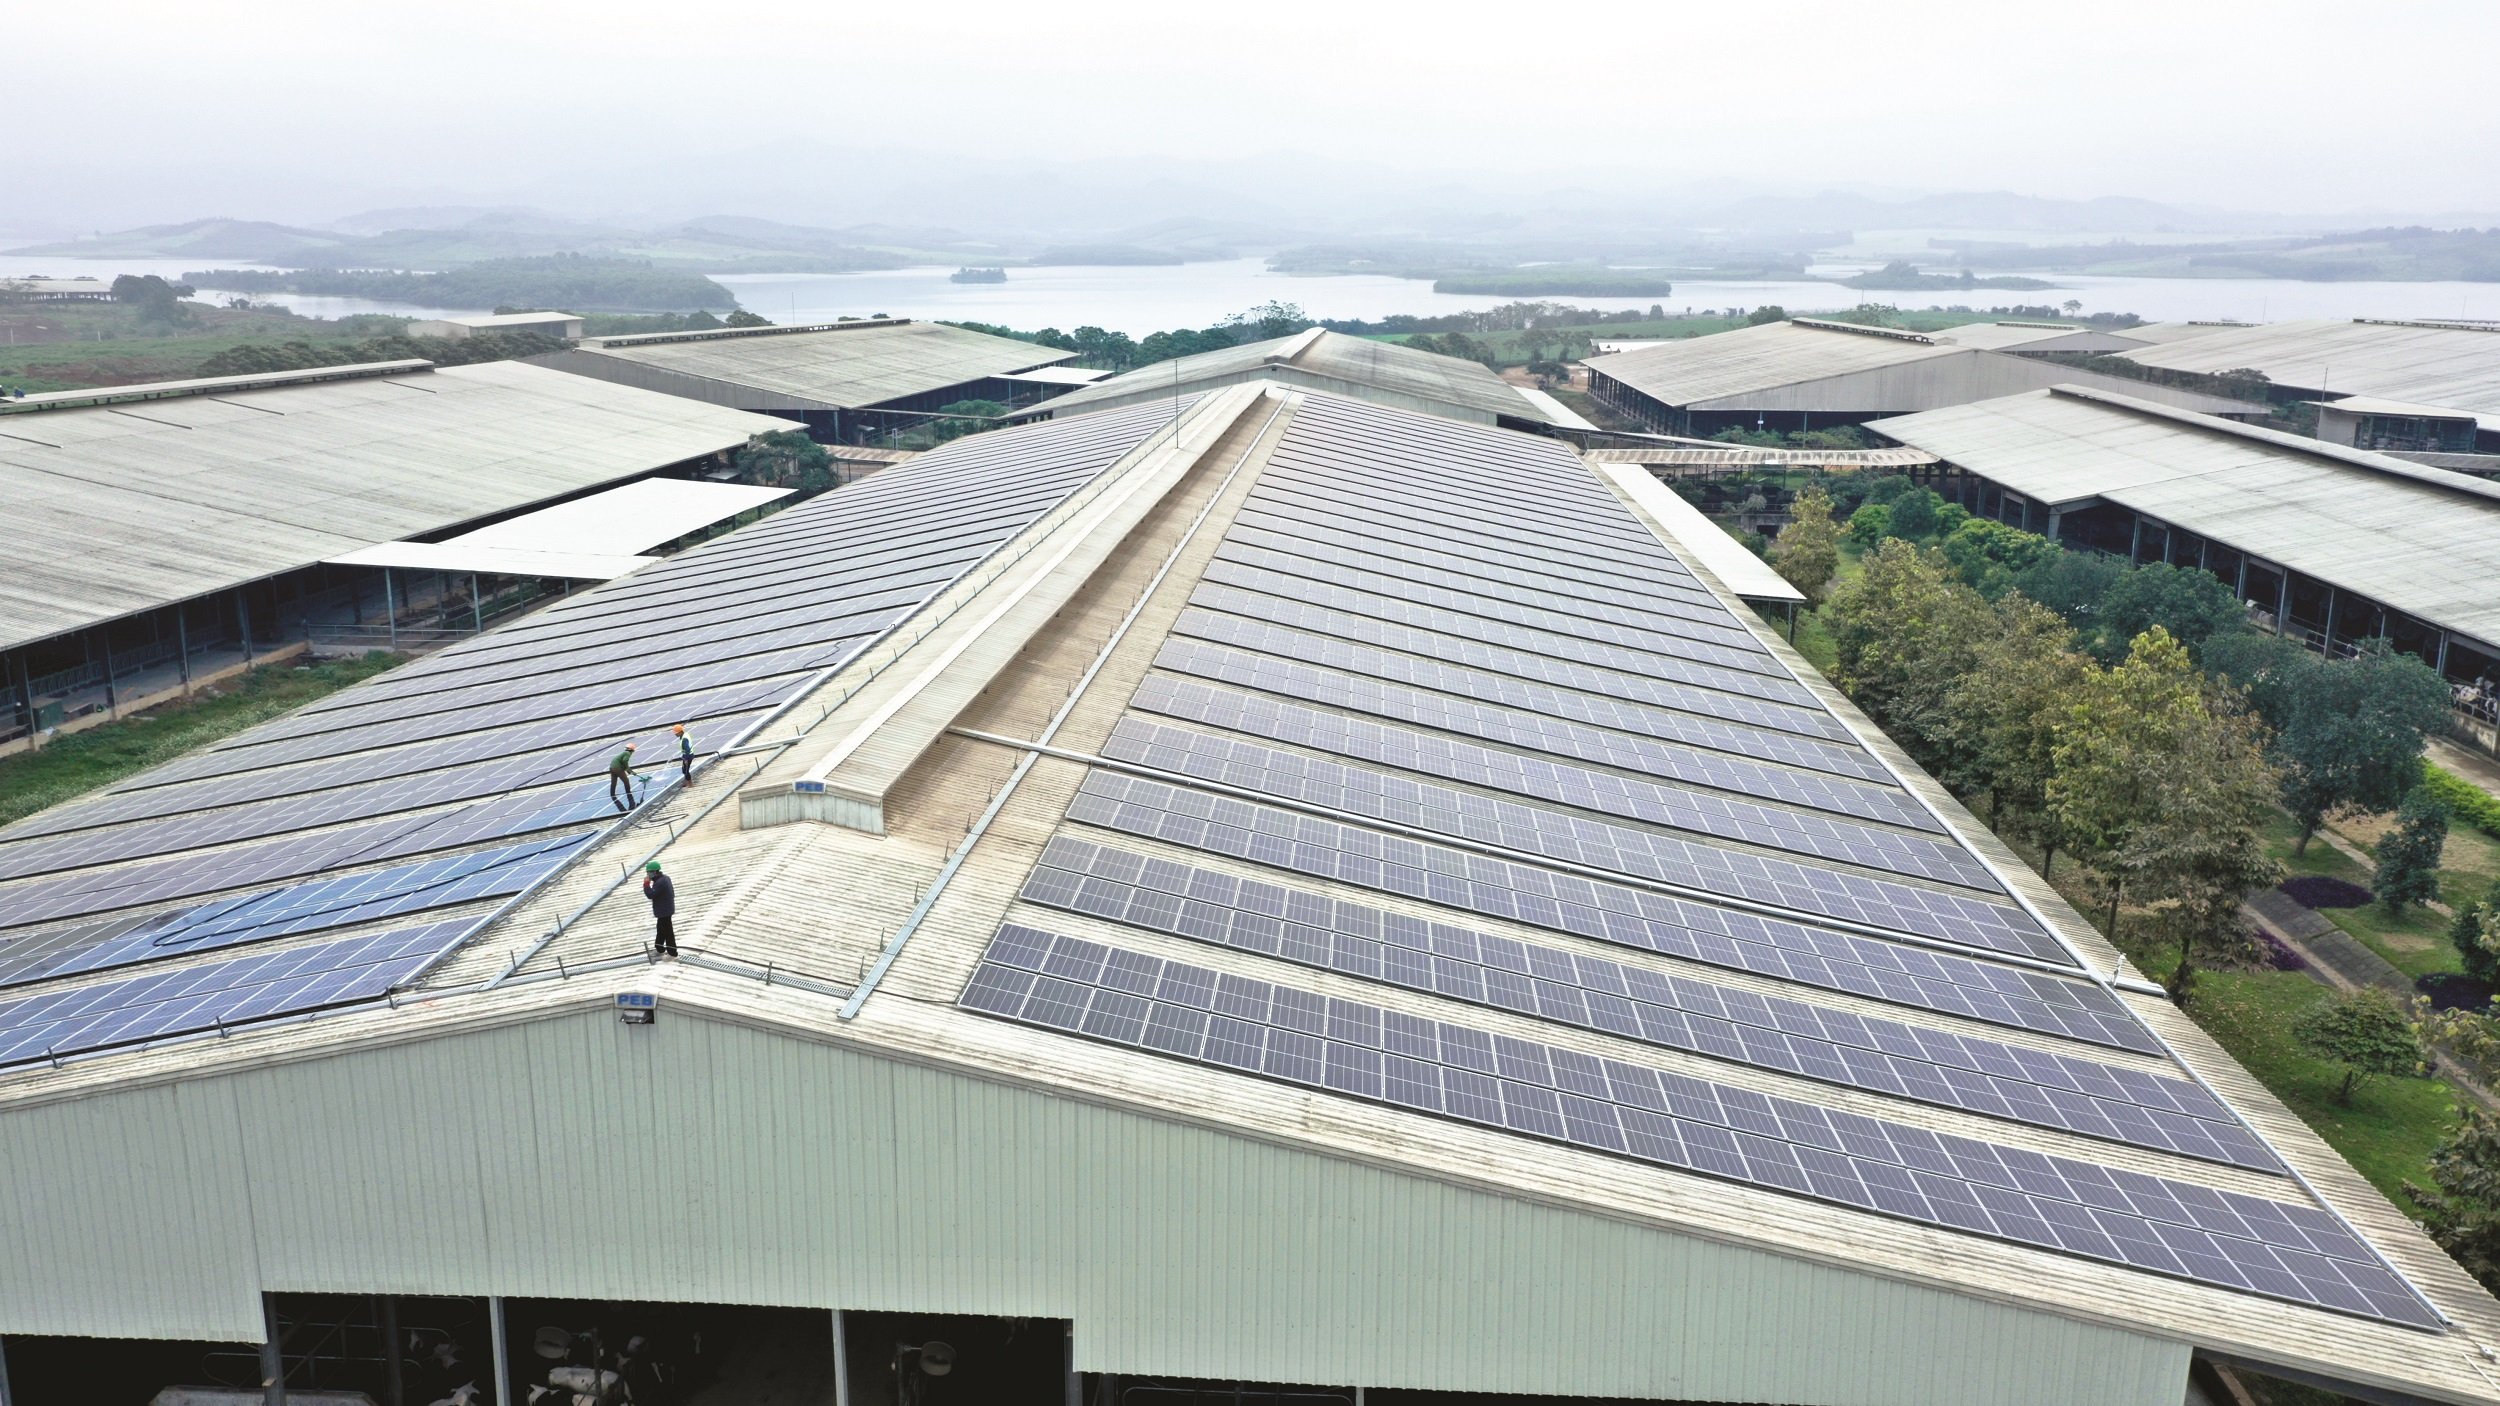 Hệ thống điện mặt trời trên mái các trang trại, nhà máy TH triển khai từ năm 2020, mỗi năm sản xuất khoảng 7 triệu kWh.